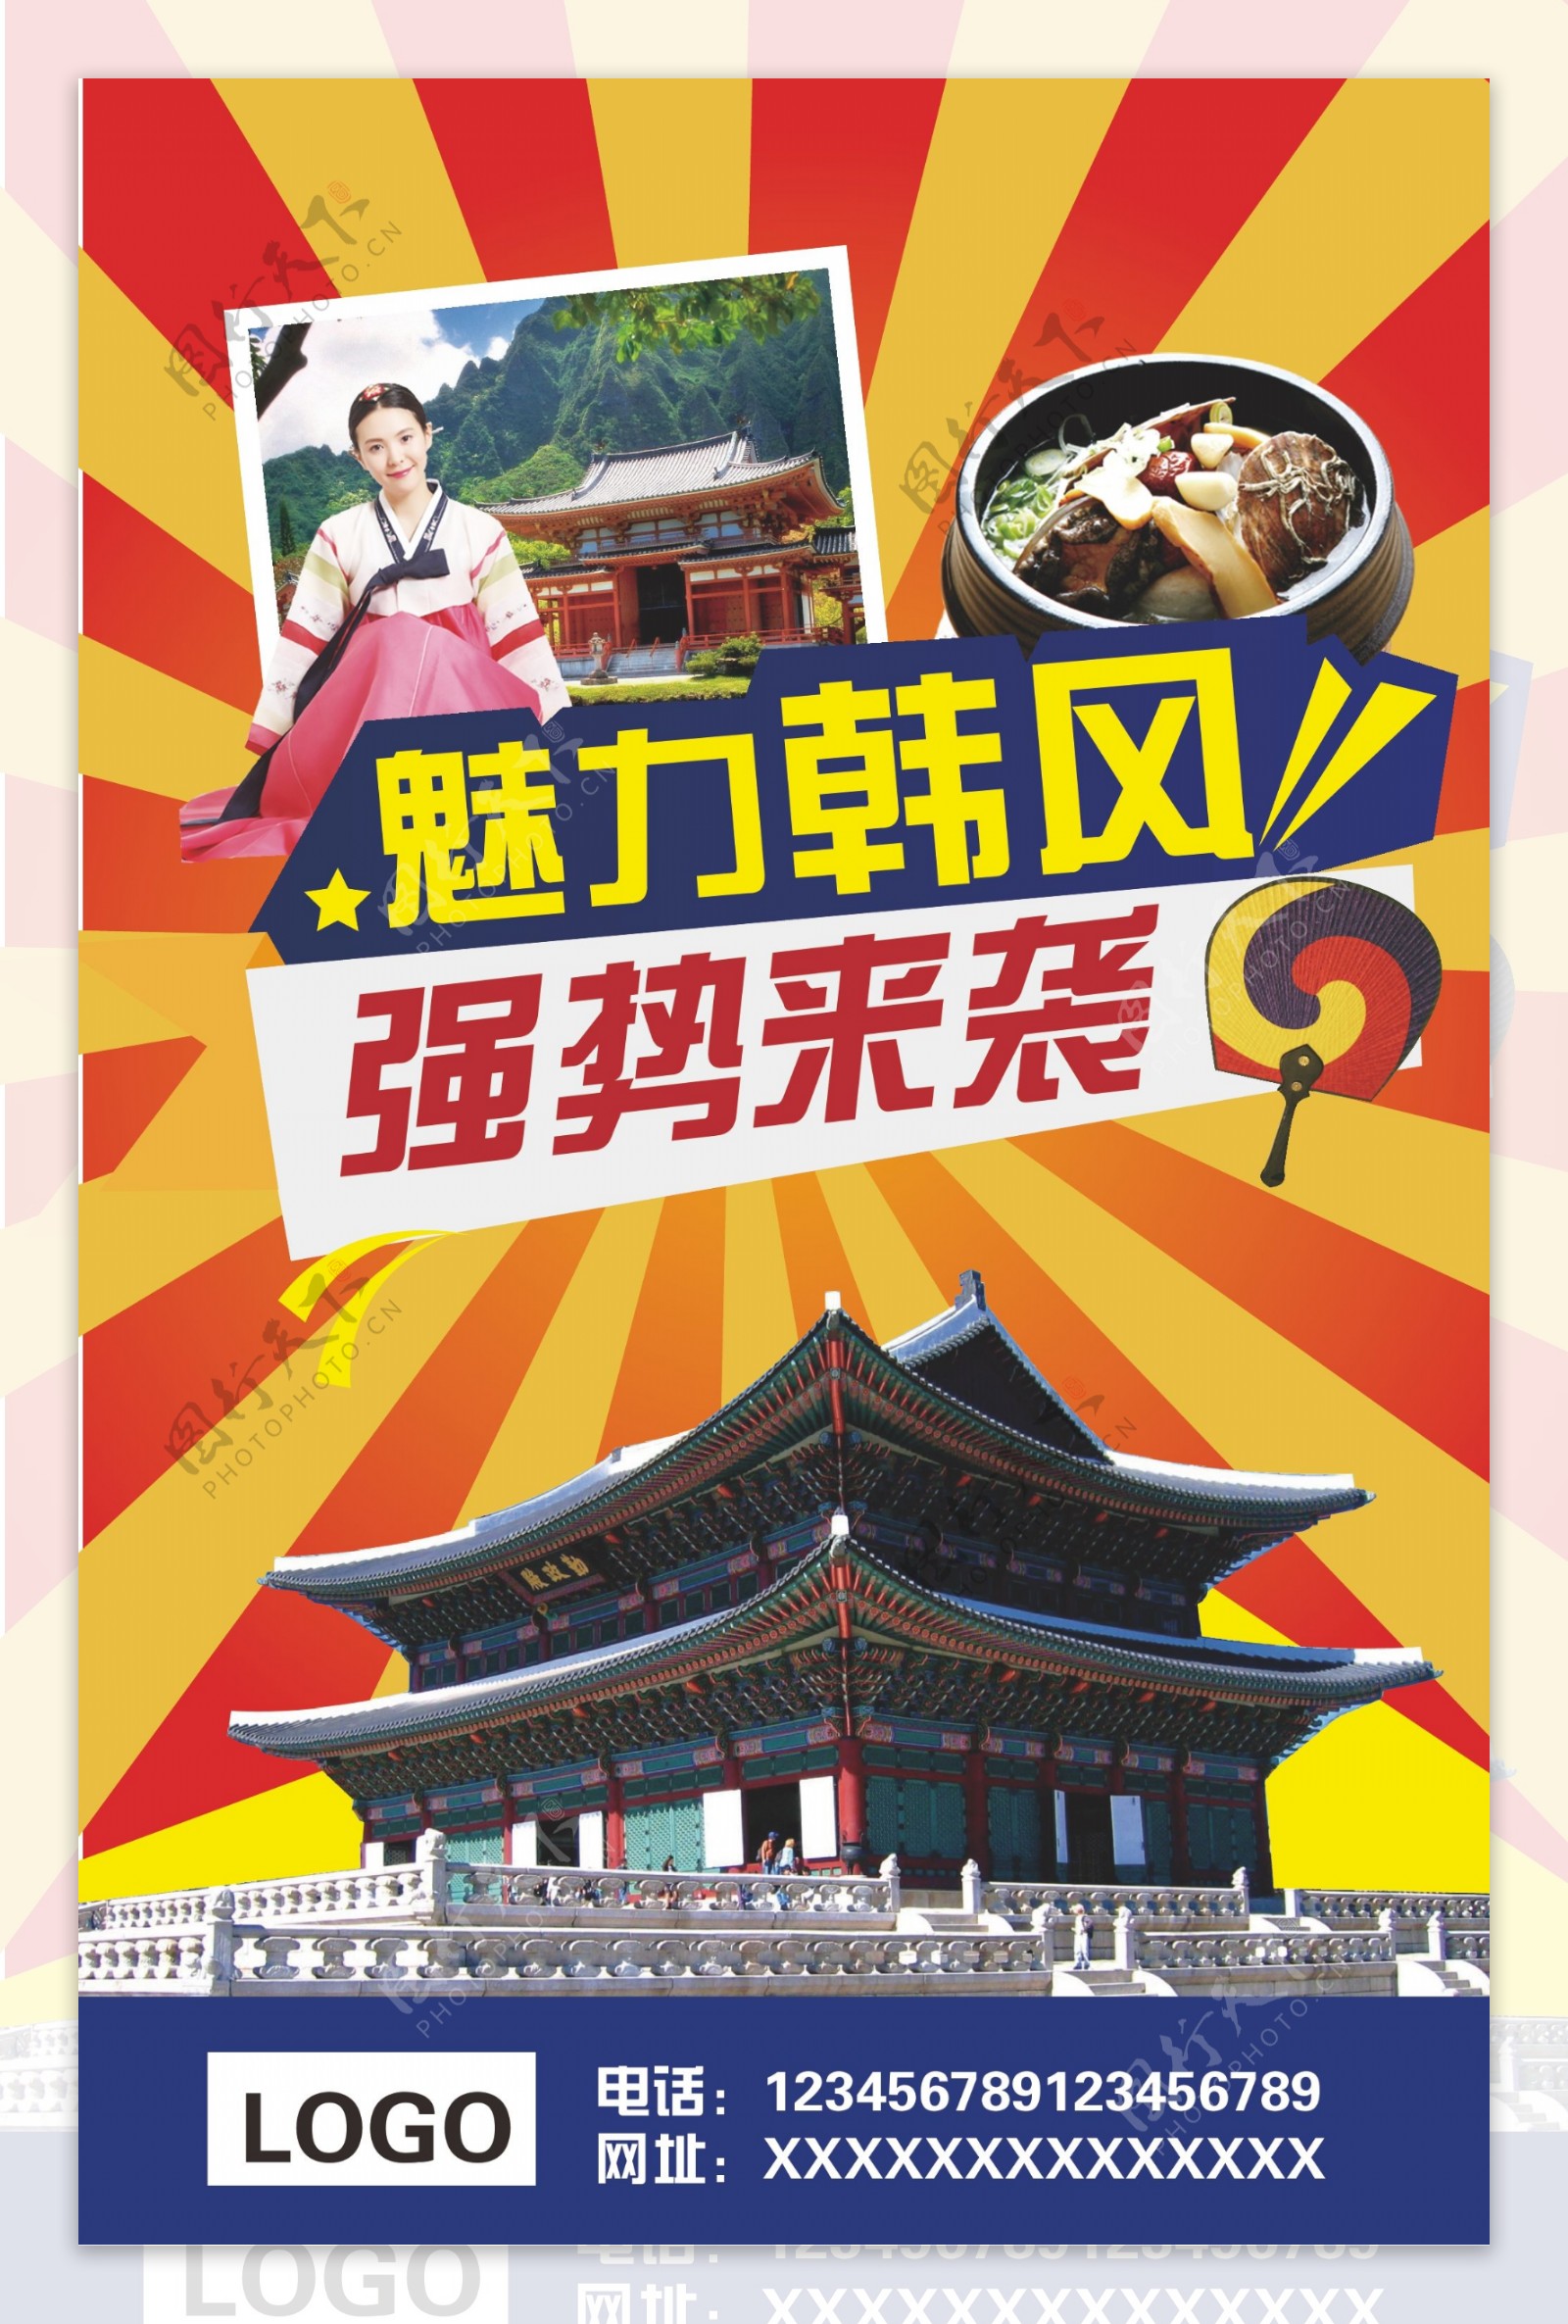 韩国旅游海报图片